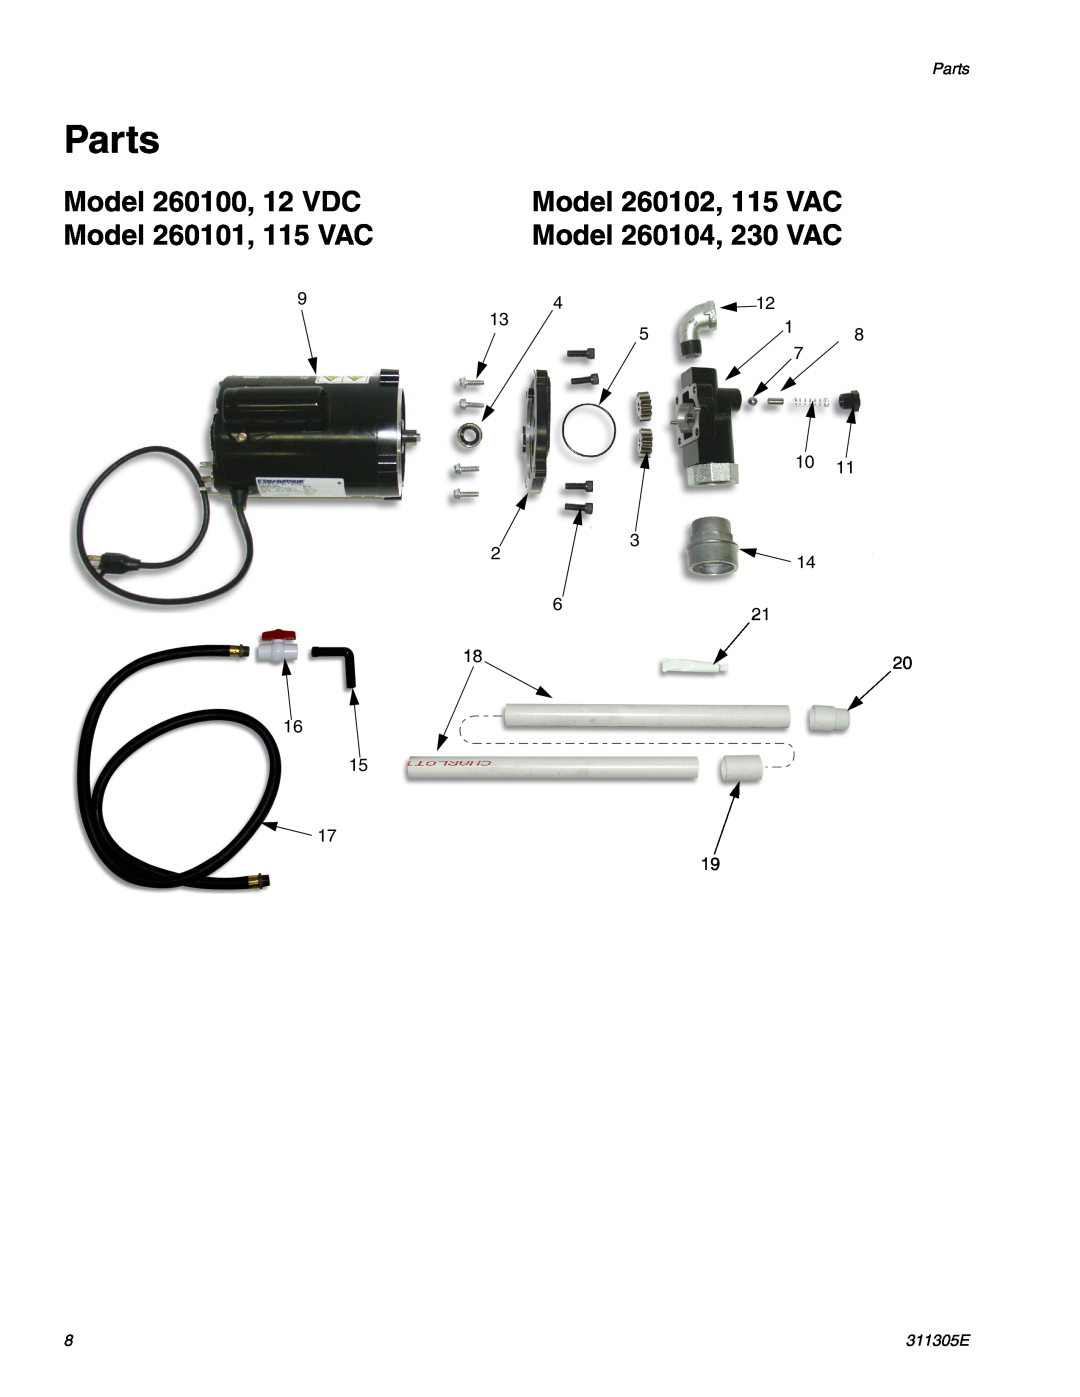 Graco Inc Parts, Model 260100, 12 VDC, Model 260102, 115 VAC, Model 260101, 115 VAC, Model 260104, 230 VAC, 311305E 